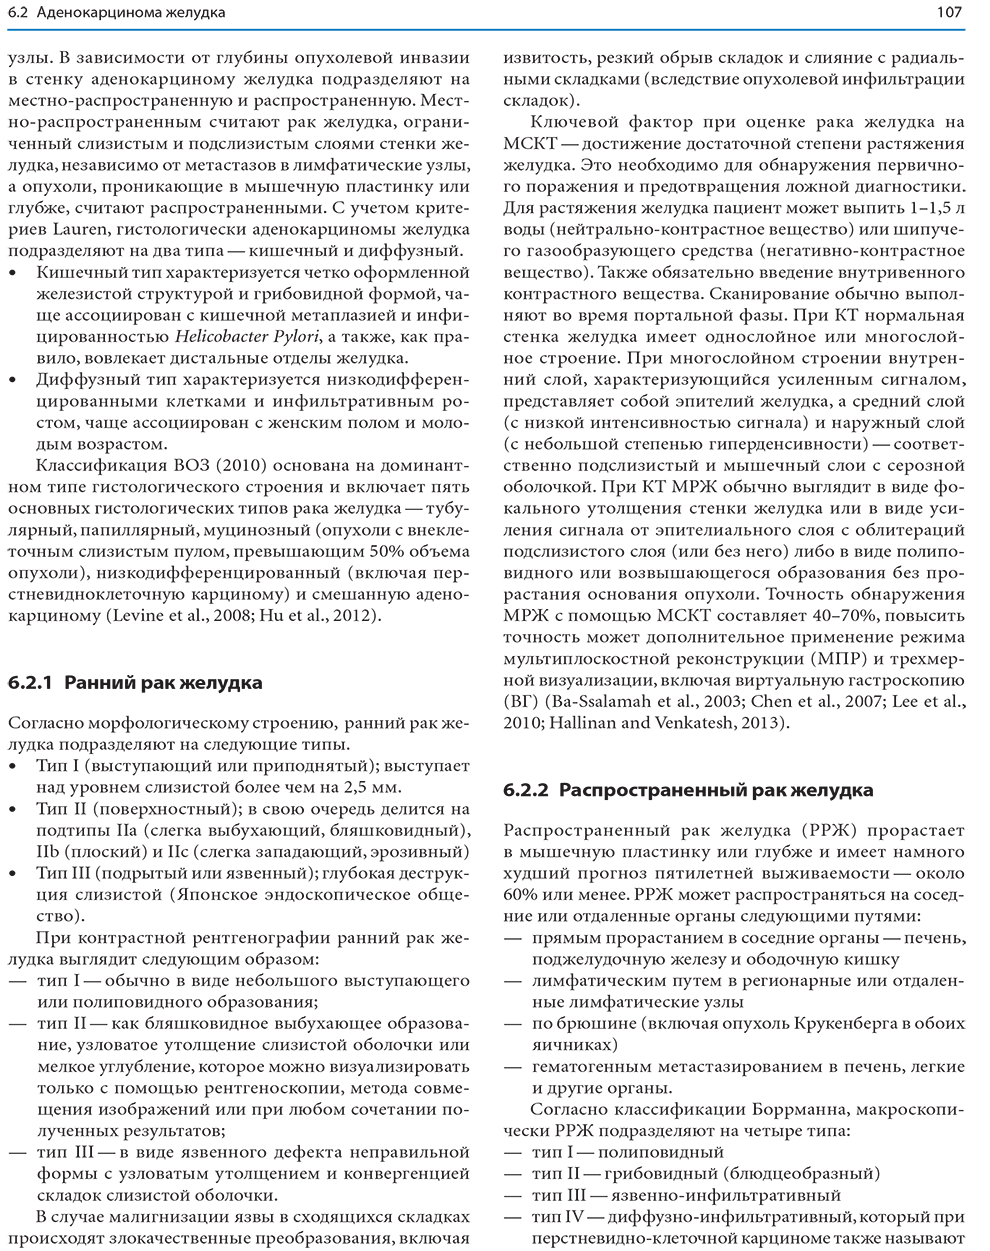 Пример страницы из книги "Лучевая диагностика заболеваний желудочно-кишечного тракта" - Пён Ин Чхве